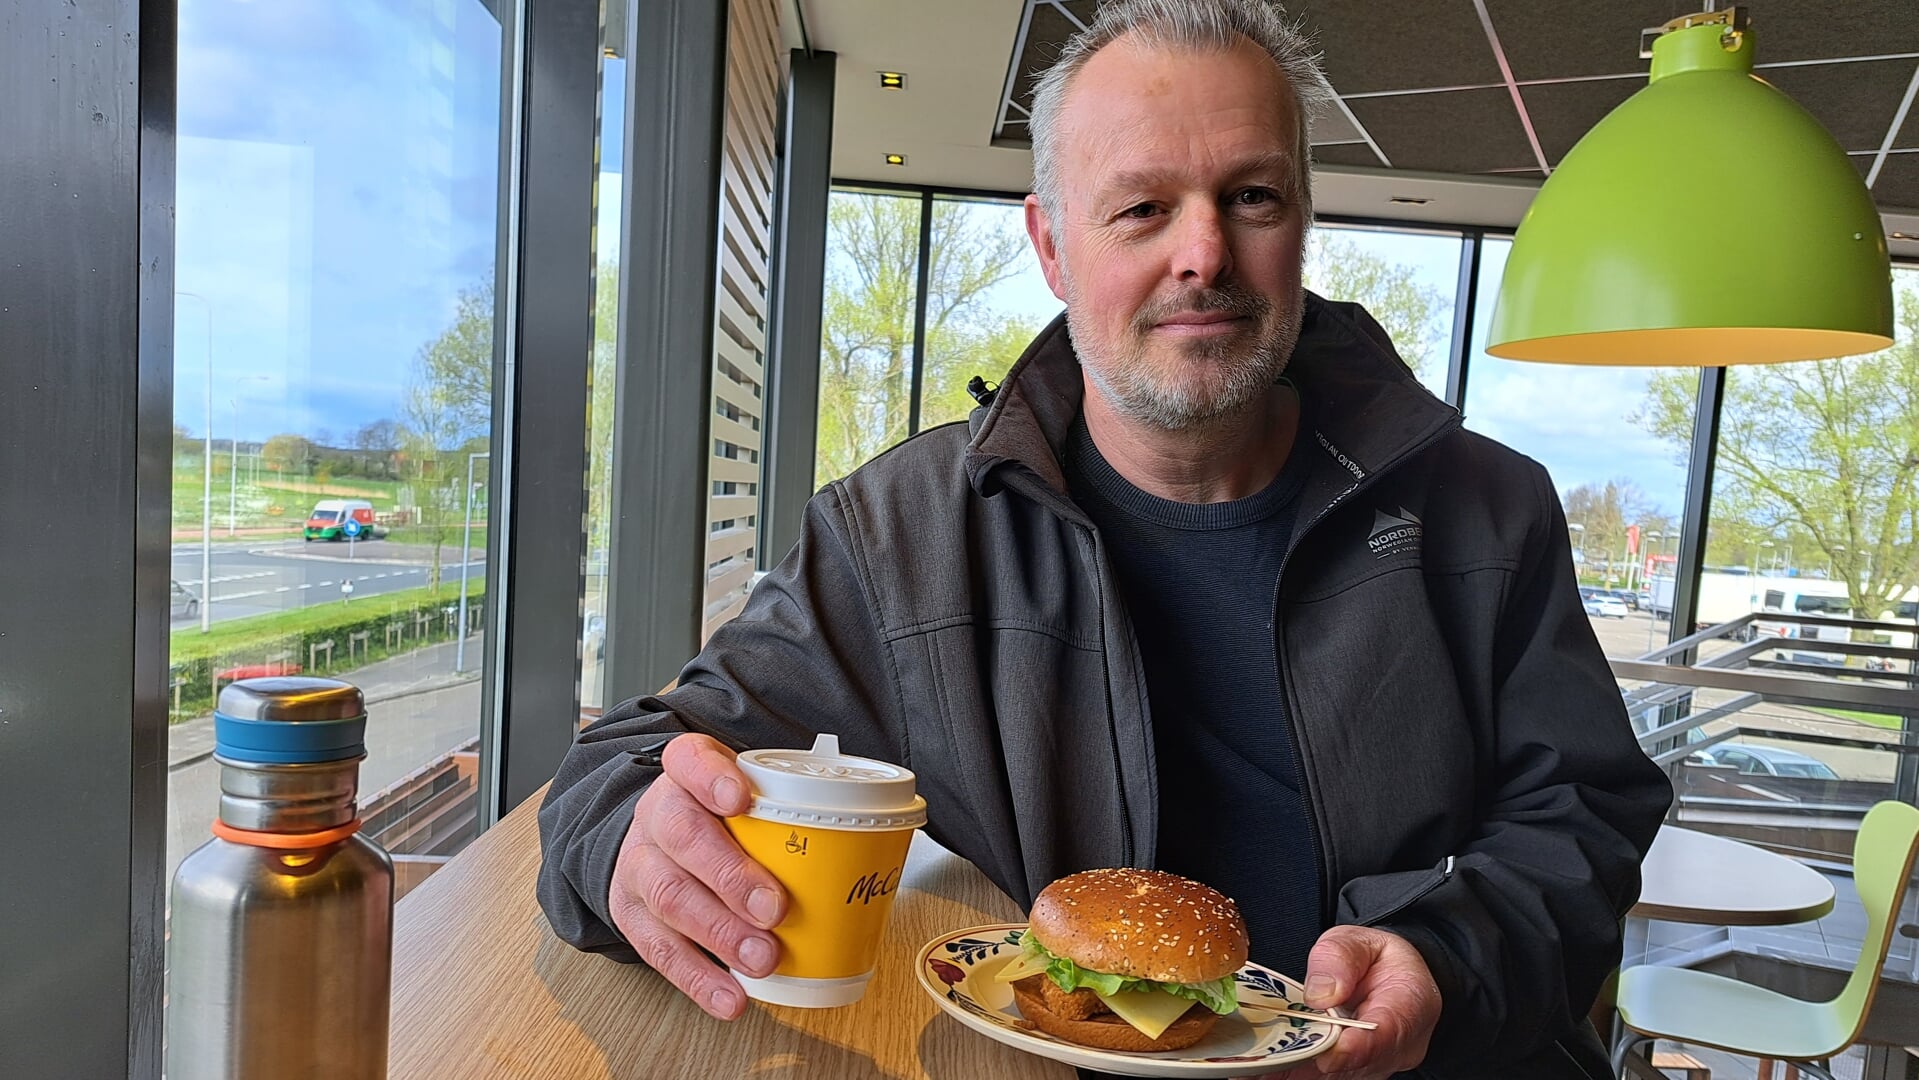 Klimaatburgemeester laat zien: je eigen bord, beker en bestek meenemen naar McDonald's kan gewoon.